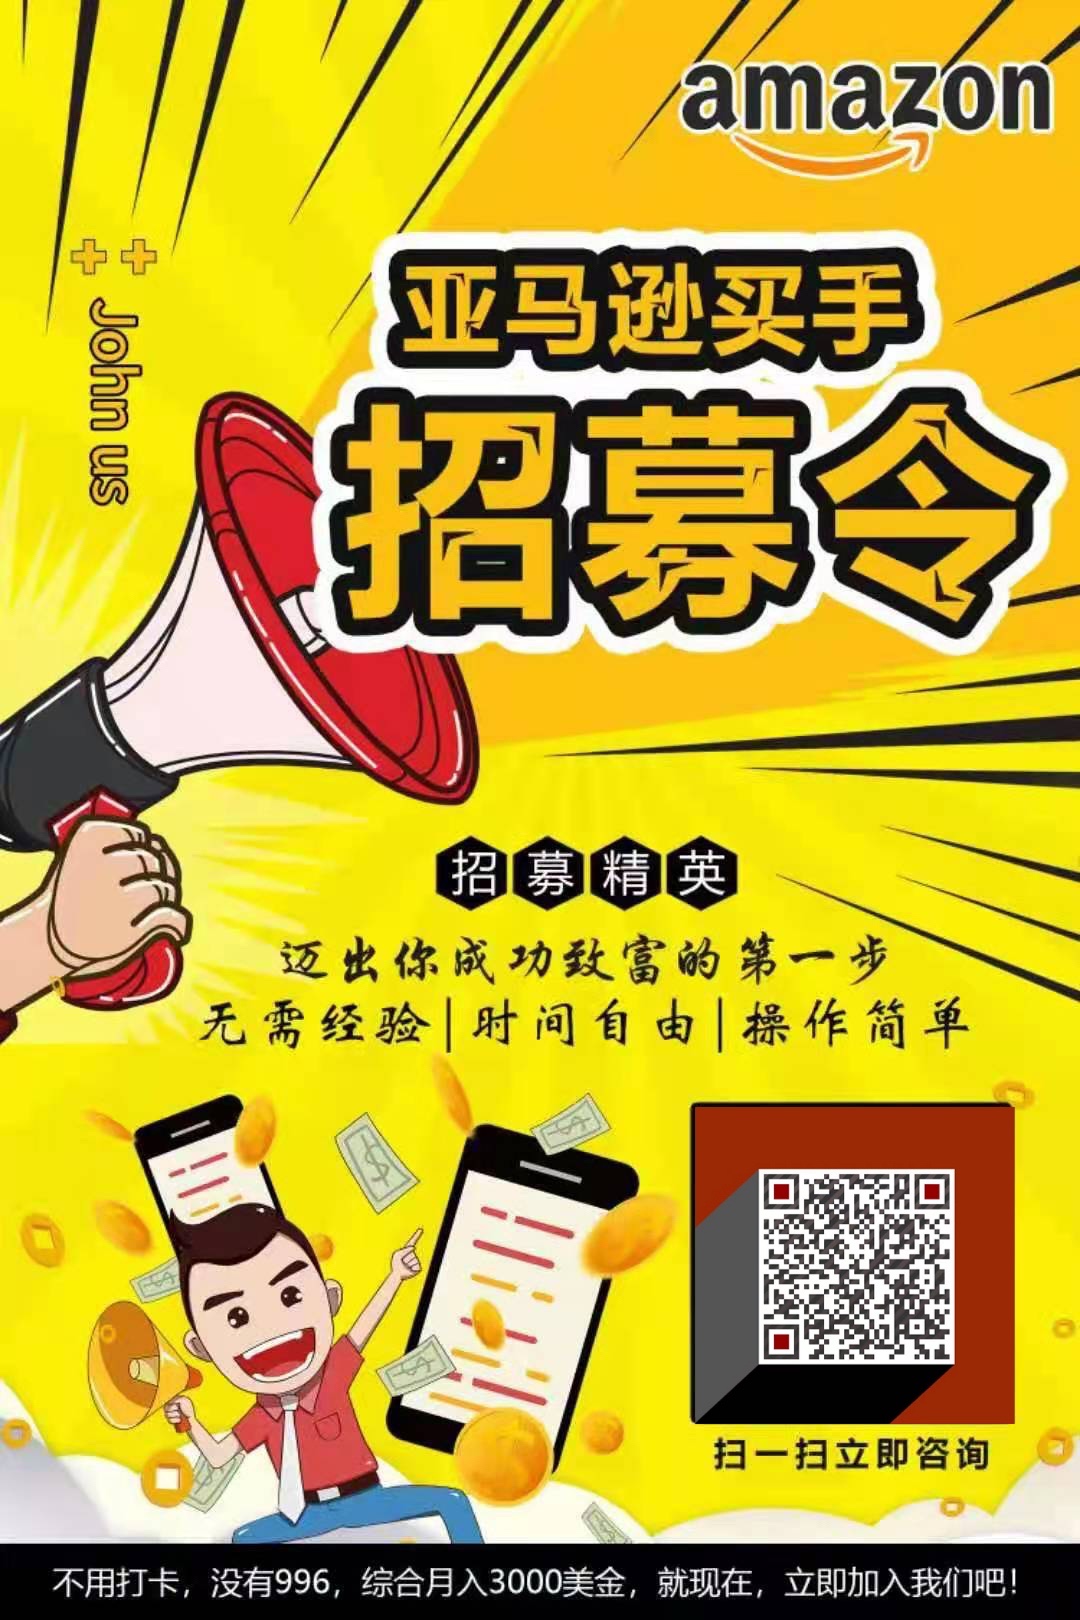 在线招募美国华人兼职买手,免费送产品 群主微信二维码